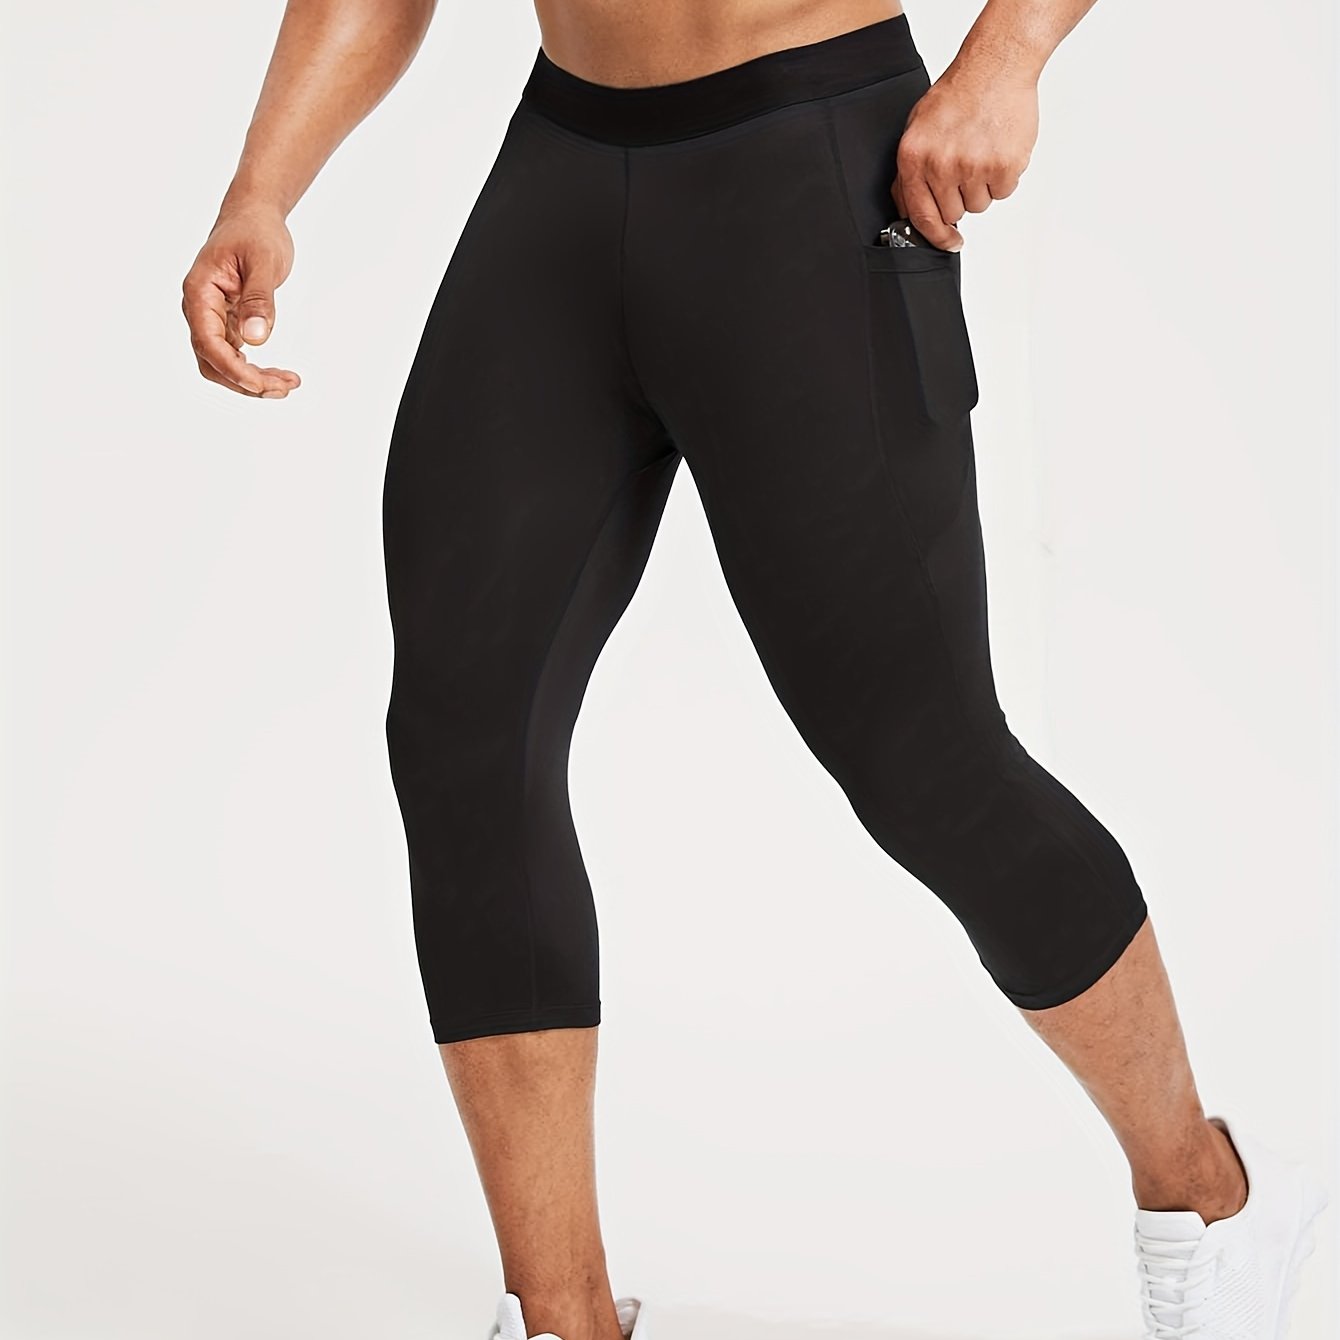 Buy DIAZ Gym wear Capri Workout Pants, Stretchable Tights Capri